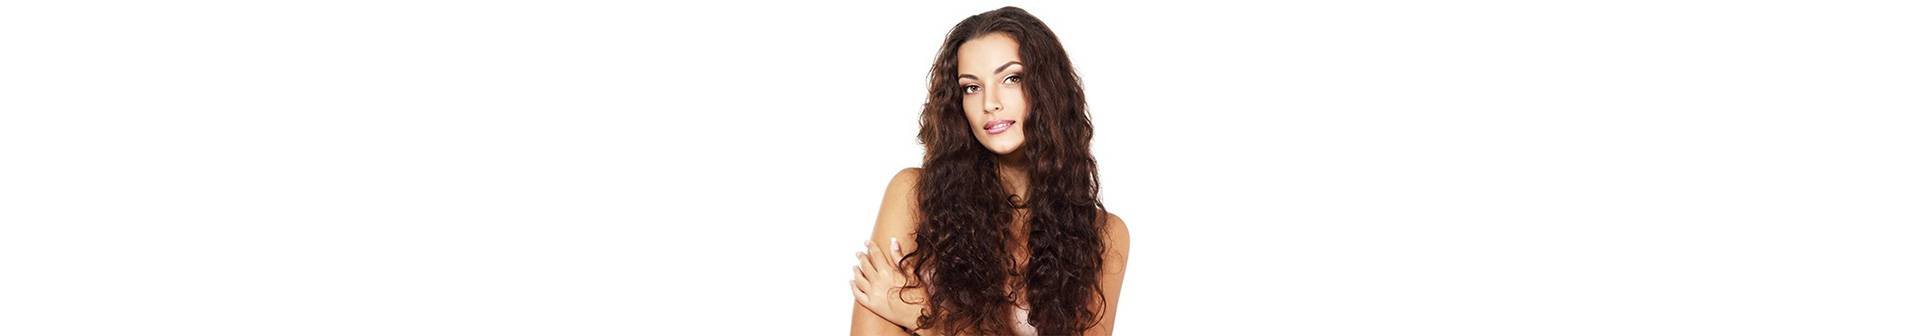 Heb je dof of beschadigd gekleurd haar? En wil je een glanzend kapsel zoals de filmsterren? Volg dan onze 5 tips om je lokken gezonder, sterker en levendiger te maken.